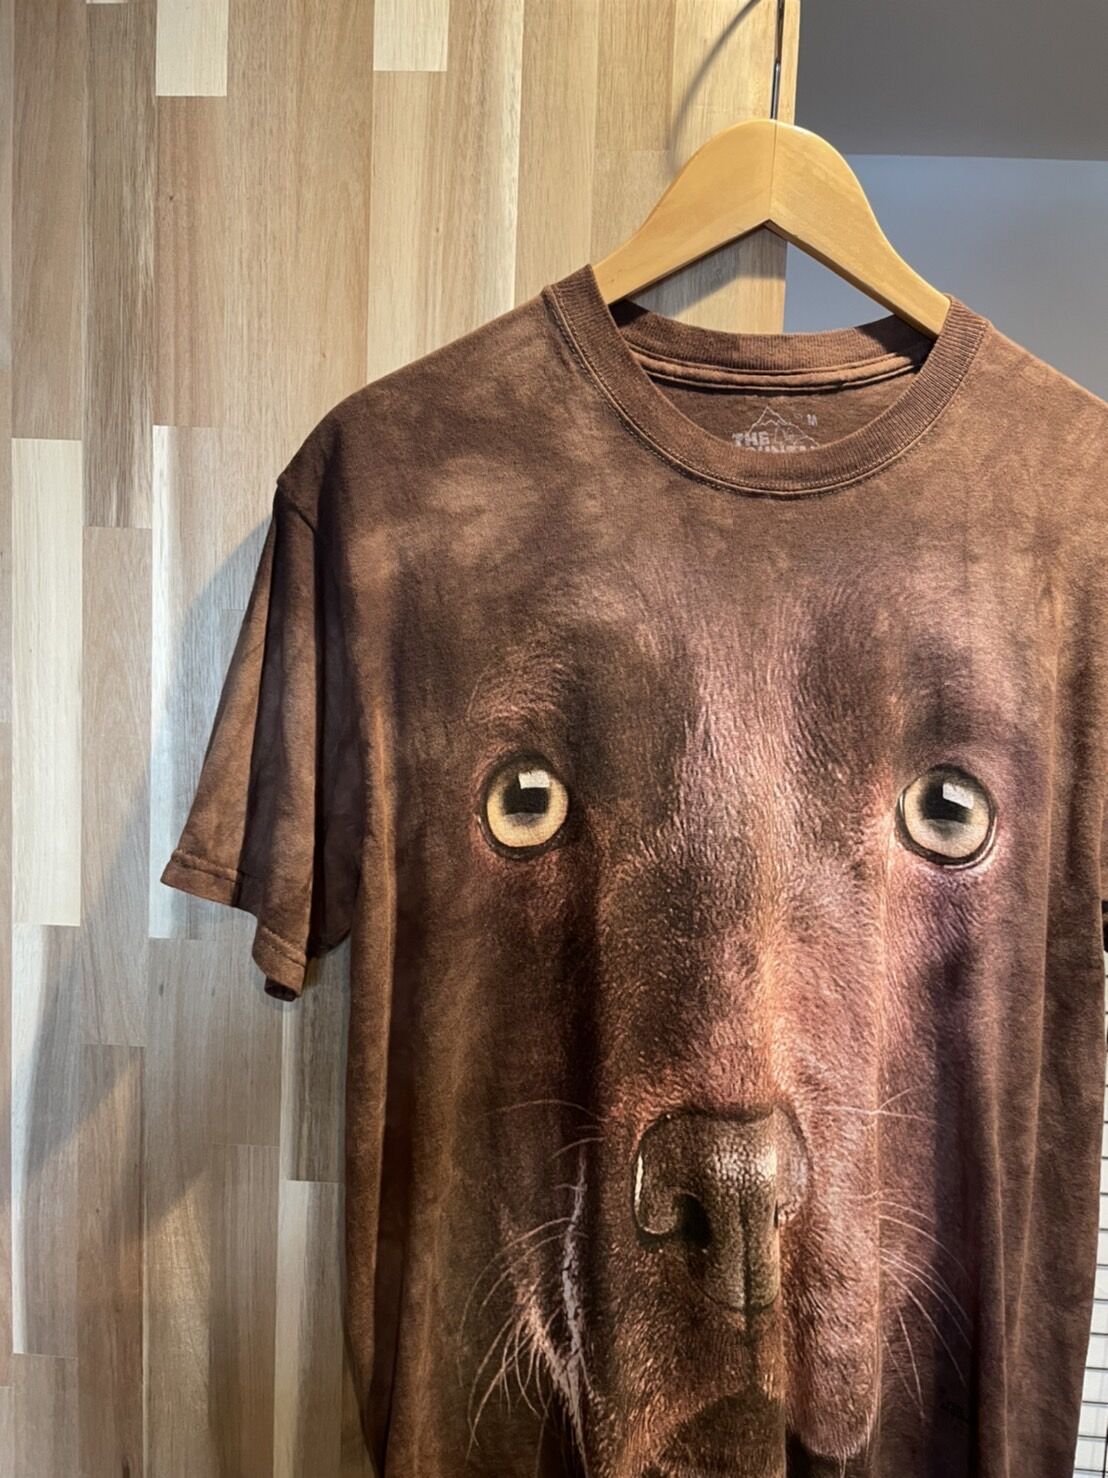 タイダイ 犬 ドッグプリント Tシャツ